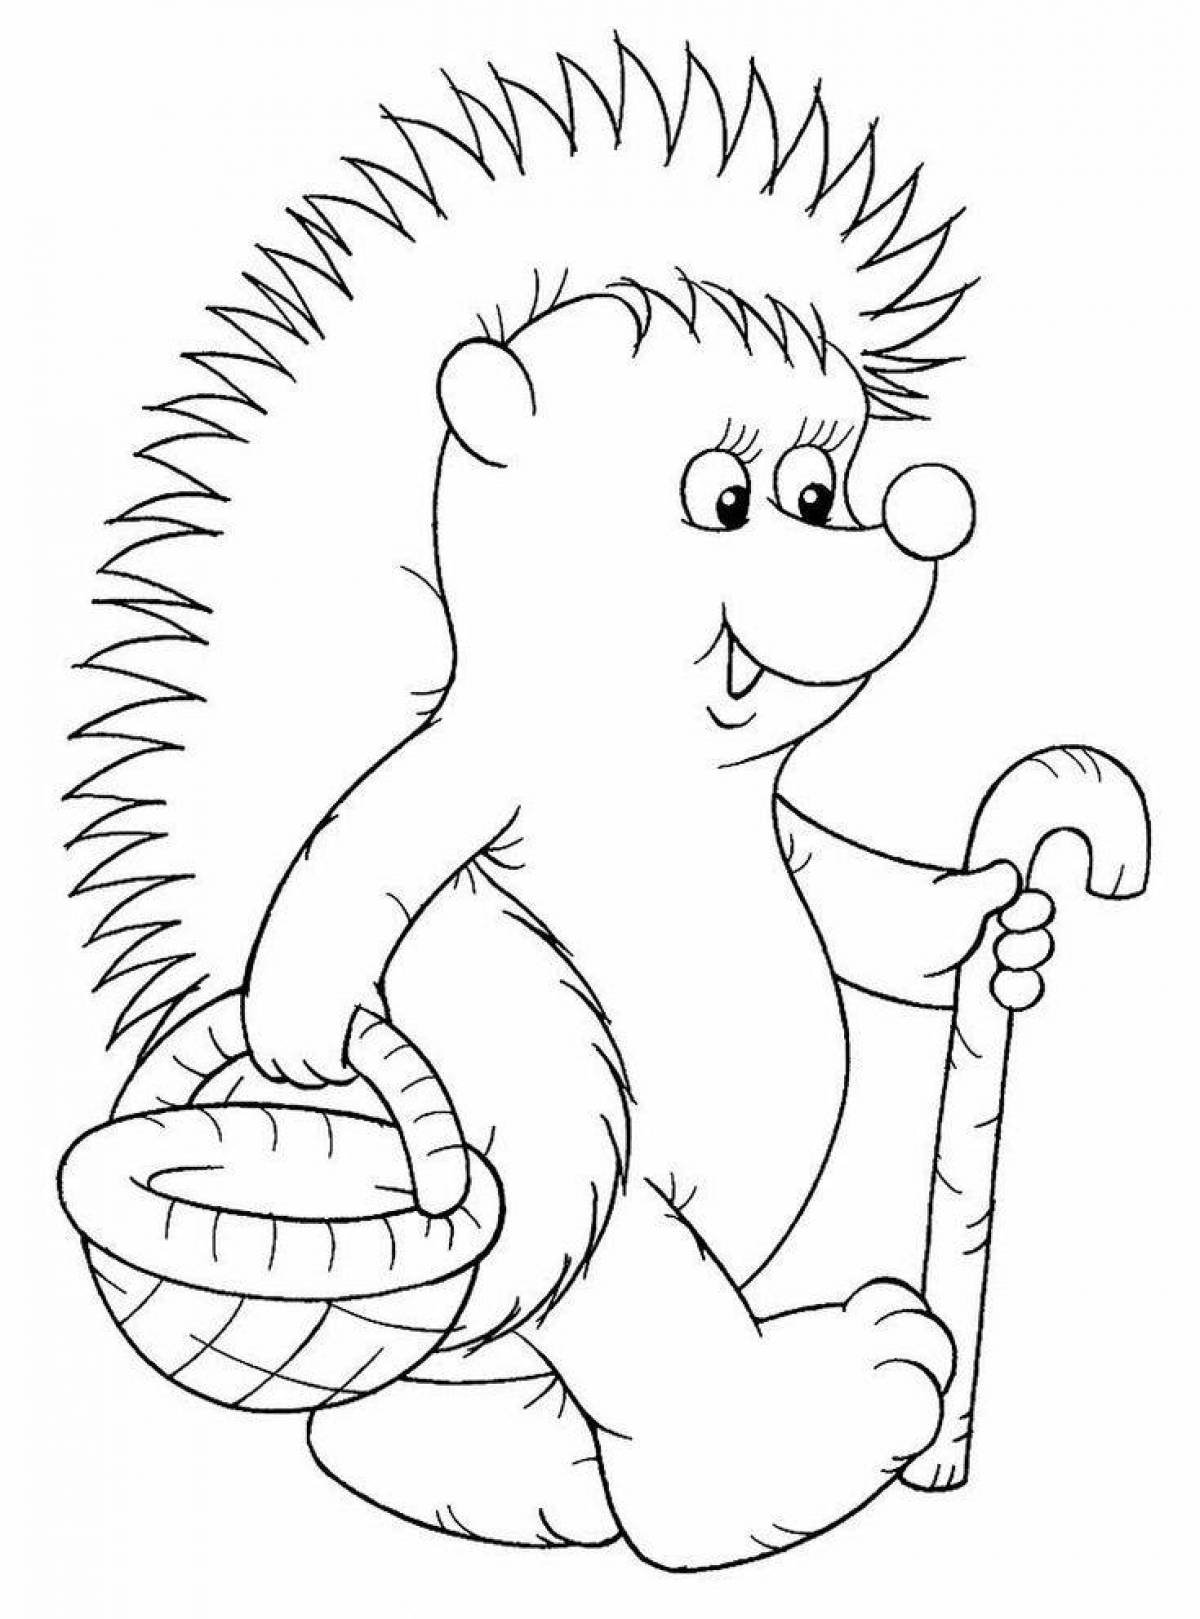 Playful hedgehog coloring book for kids